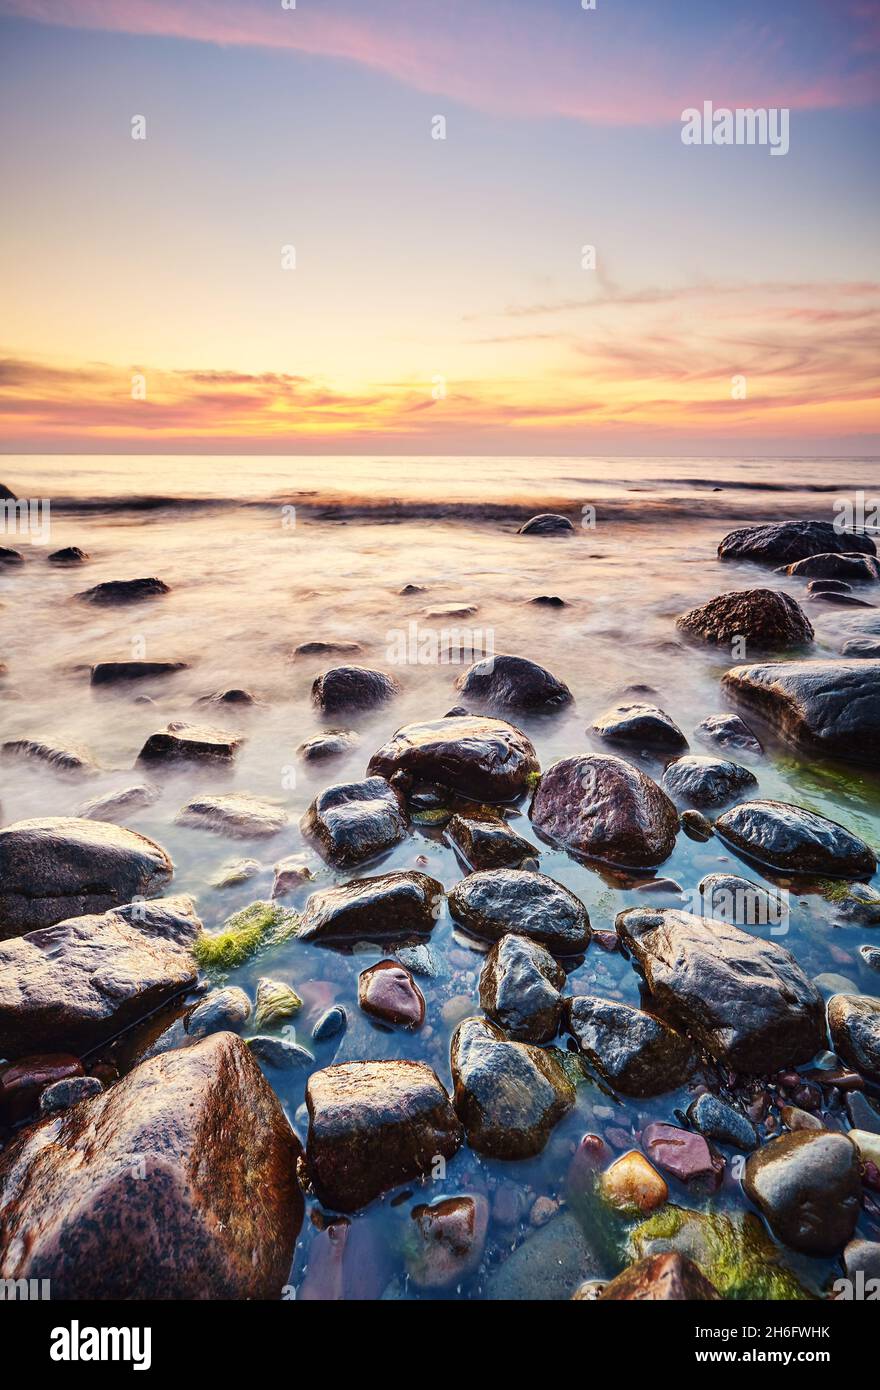 Rocky beach at a beautiful sunset. Stock Photo